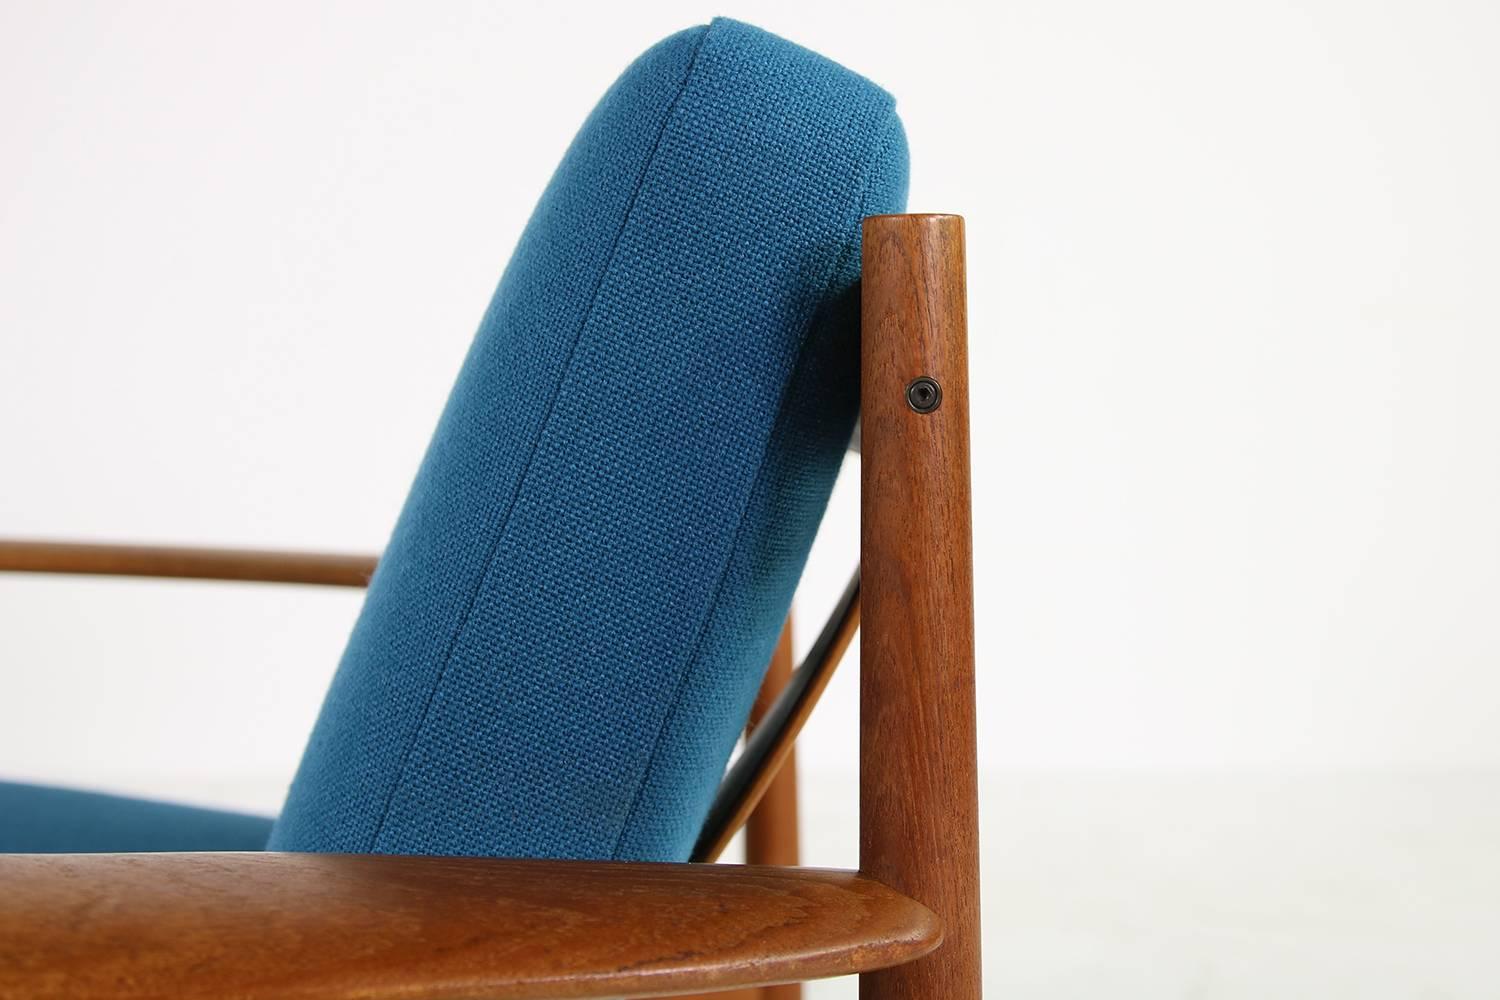 Fabric Danish Modern, 1960s Grete Jalk Teak Easy Chair by France & Son Denmark, Petrol